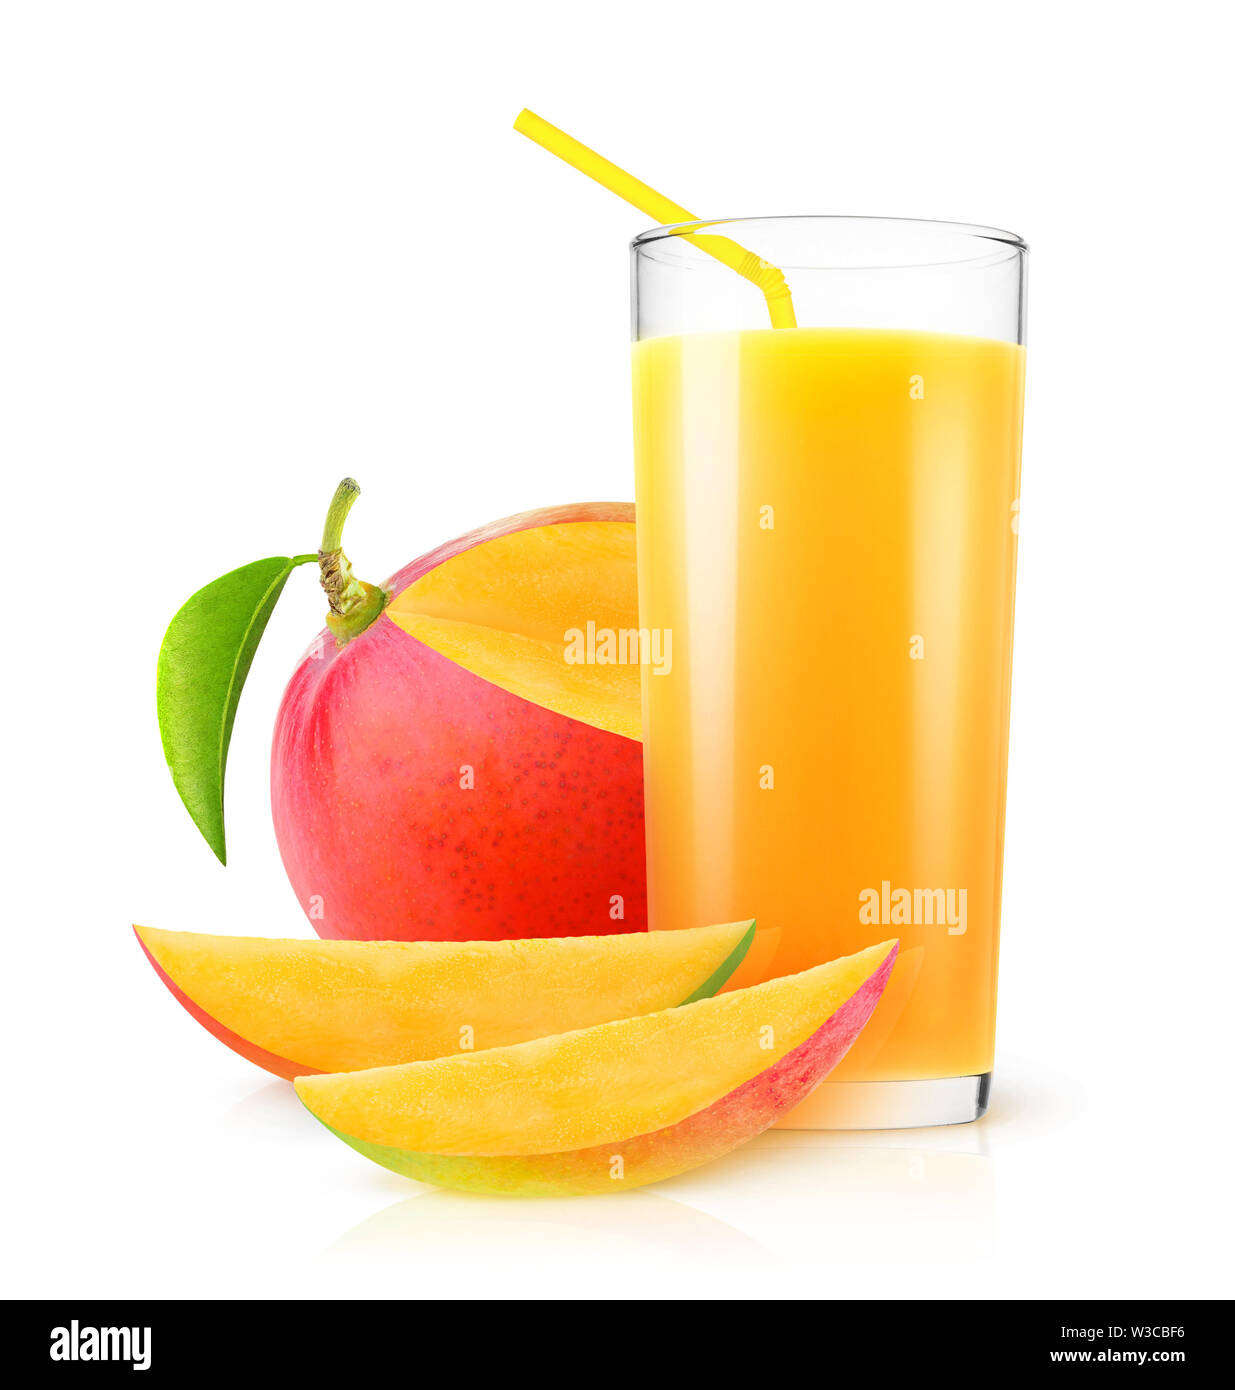 Jus de mangue isolés. Mangue fraîche boire dans un verre et des morceaux de fruits isolé sur fond blanc avec clipping path Banque D'Images